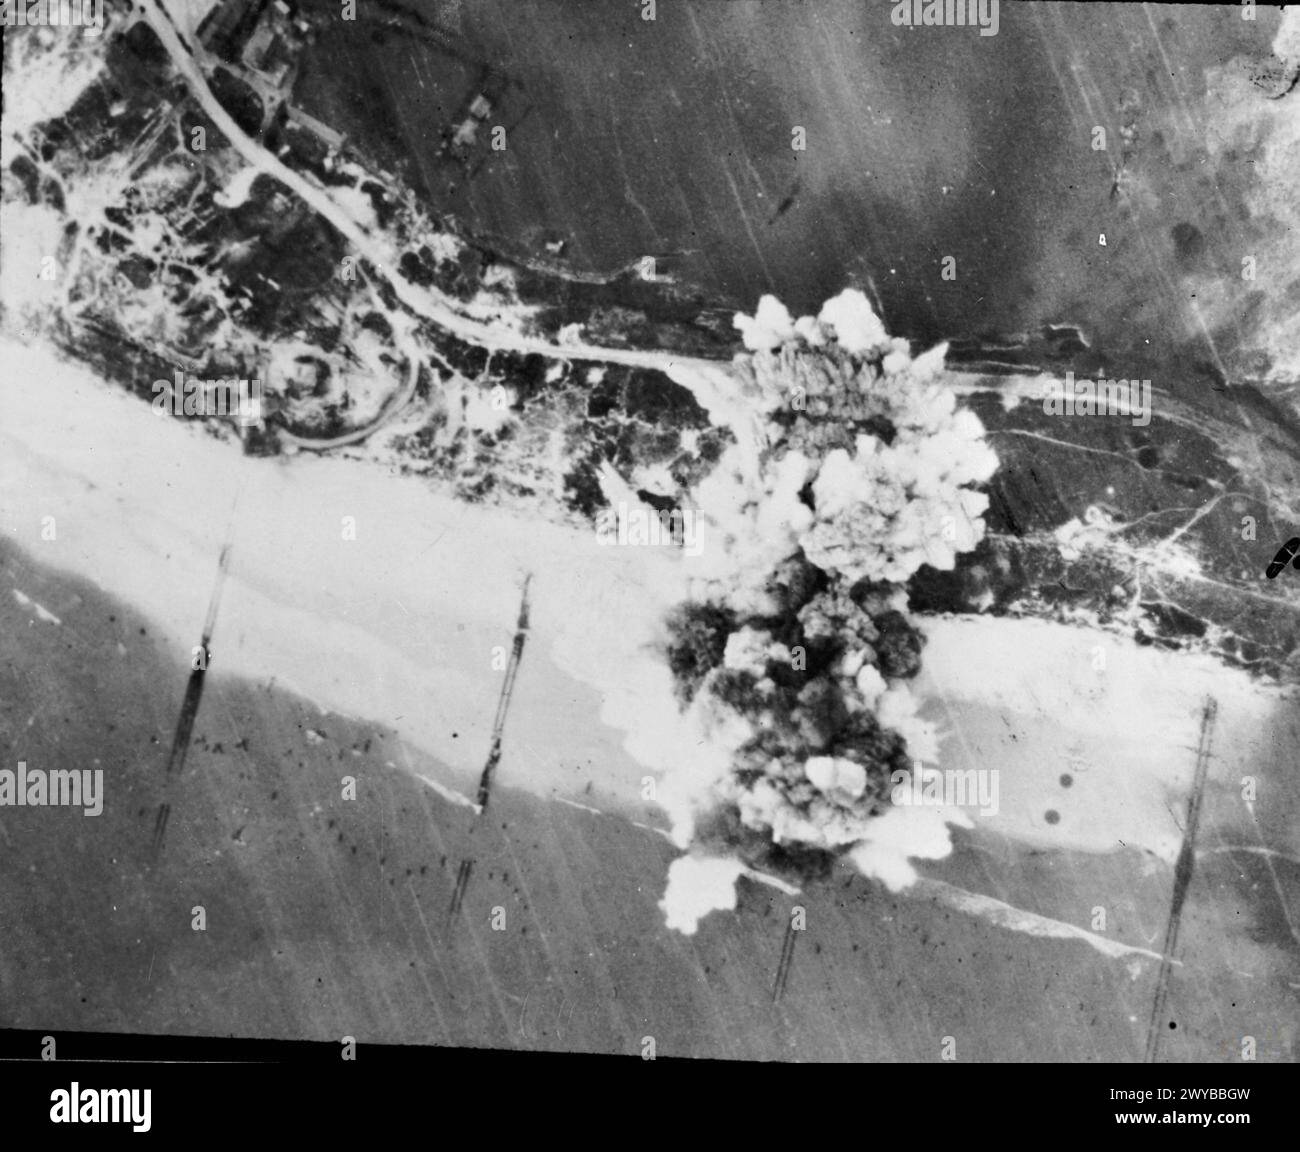 DIE POLNISCHE LUFTWAFFE IM NORDWESTEUROPA-FELDZUG 1944-1945 - Was die Spitfire-Sprungbomber tun konnten. Explosionen überspannen deutsche Flakpositionen nahe der Küste auf Walcheren Island, 30. Oktober 1944. Dieser Angriff, ausgeführt von Spitfire XVI, einer der Geschwader des Polnischen Flügels Nr. 131, war Teil einer anhaltenden „Erweichungskampagne“ der No. 84 Group und der Bombertruppen vor einem amphibischen Assualt auf der befestigten Insel. , Polnische Luftwaffe, 131 Polnischer Jagdflügel, Royal Air Force, Gruppe, 84 Stockfoto